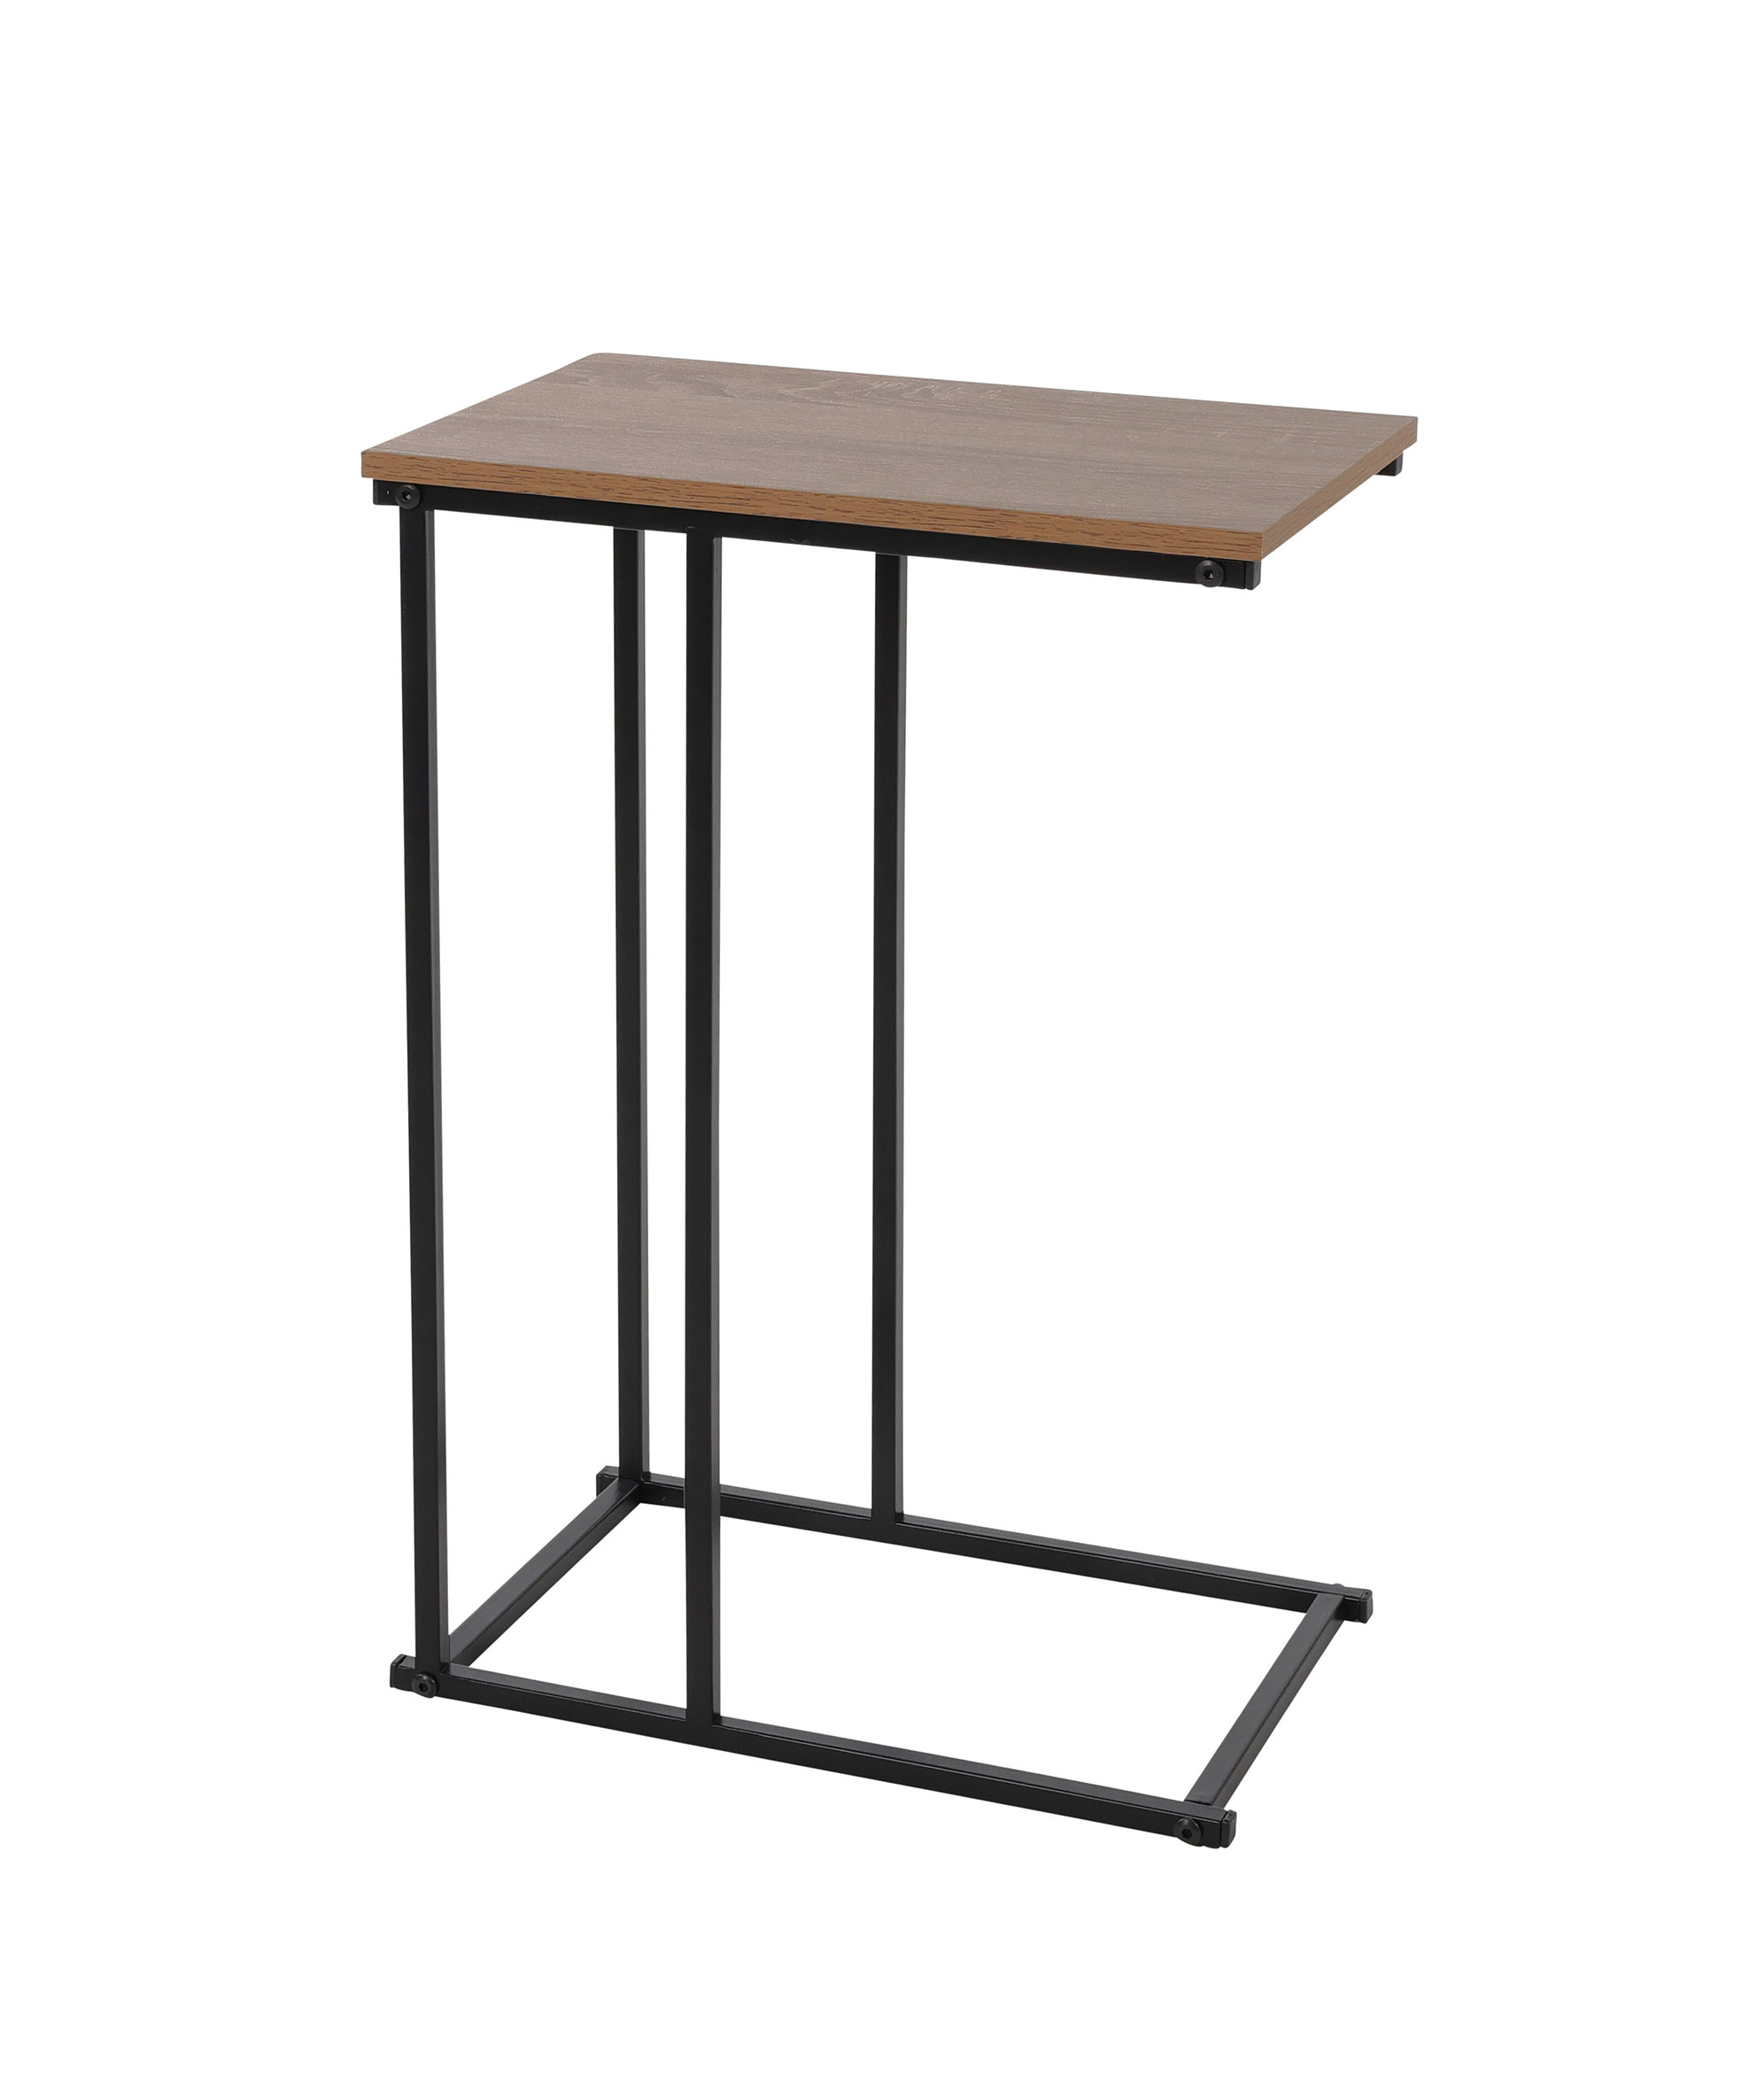 Holz Beistelltisch mit Metall Gestell - 58 x 40 cm - Tisch zum Zustellen oder Dekorieren